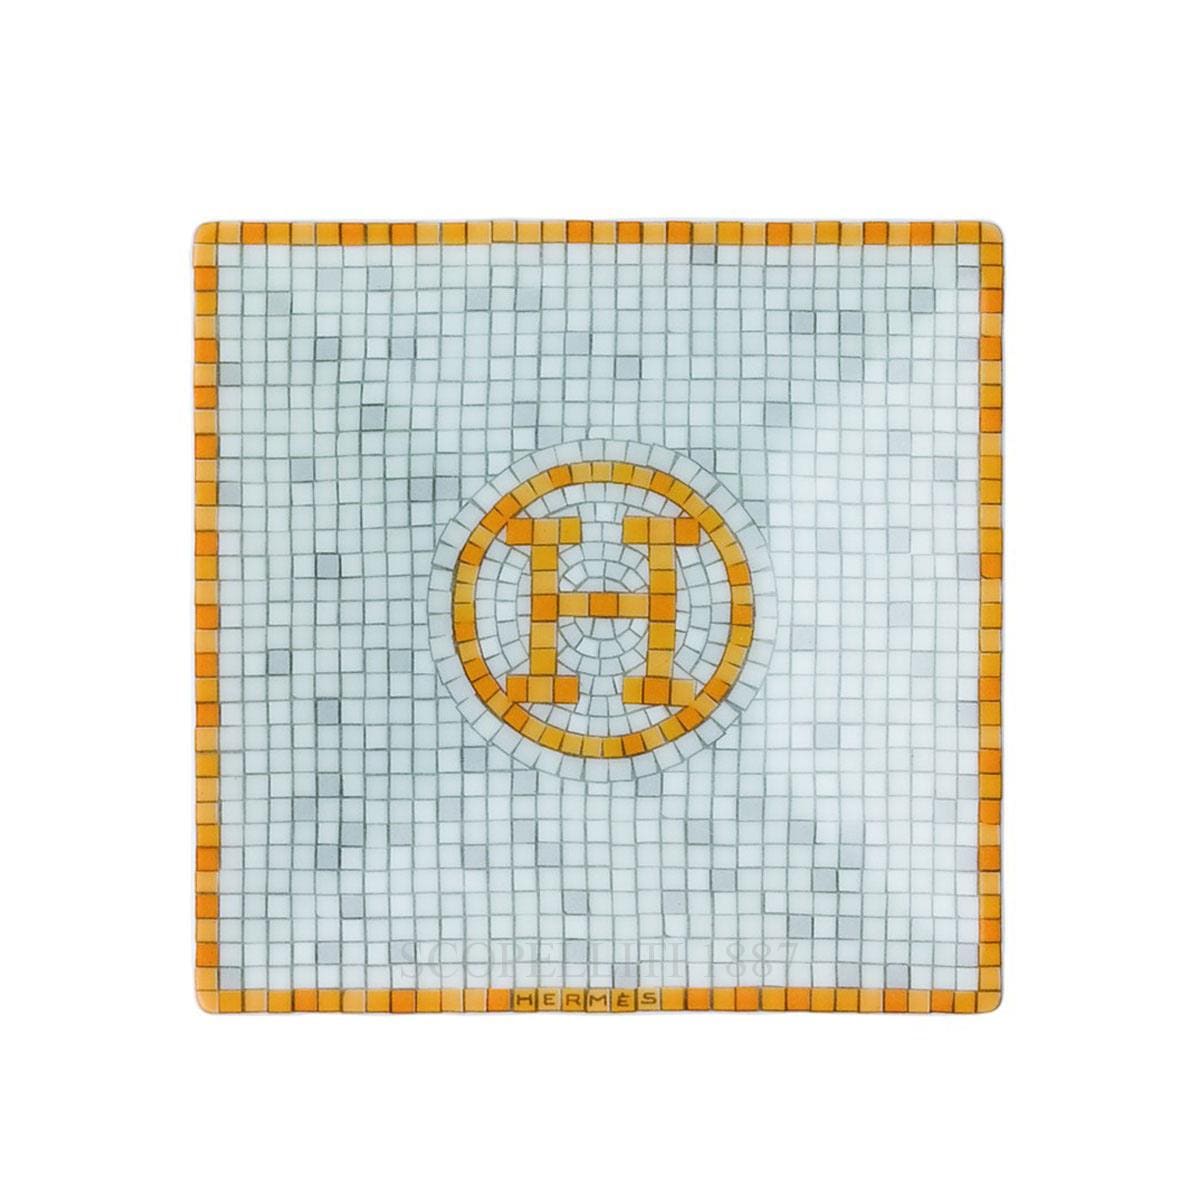 Hermes Mosaique au 24 Square Plate n°1